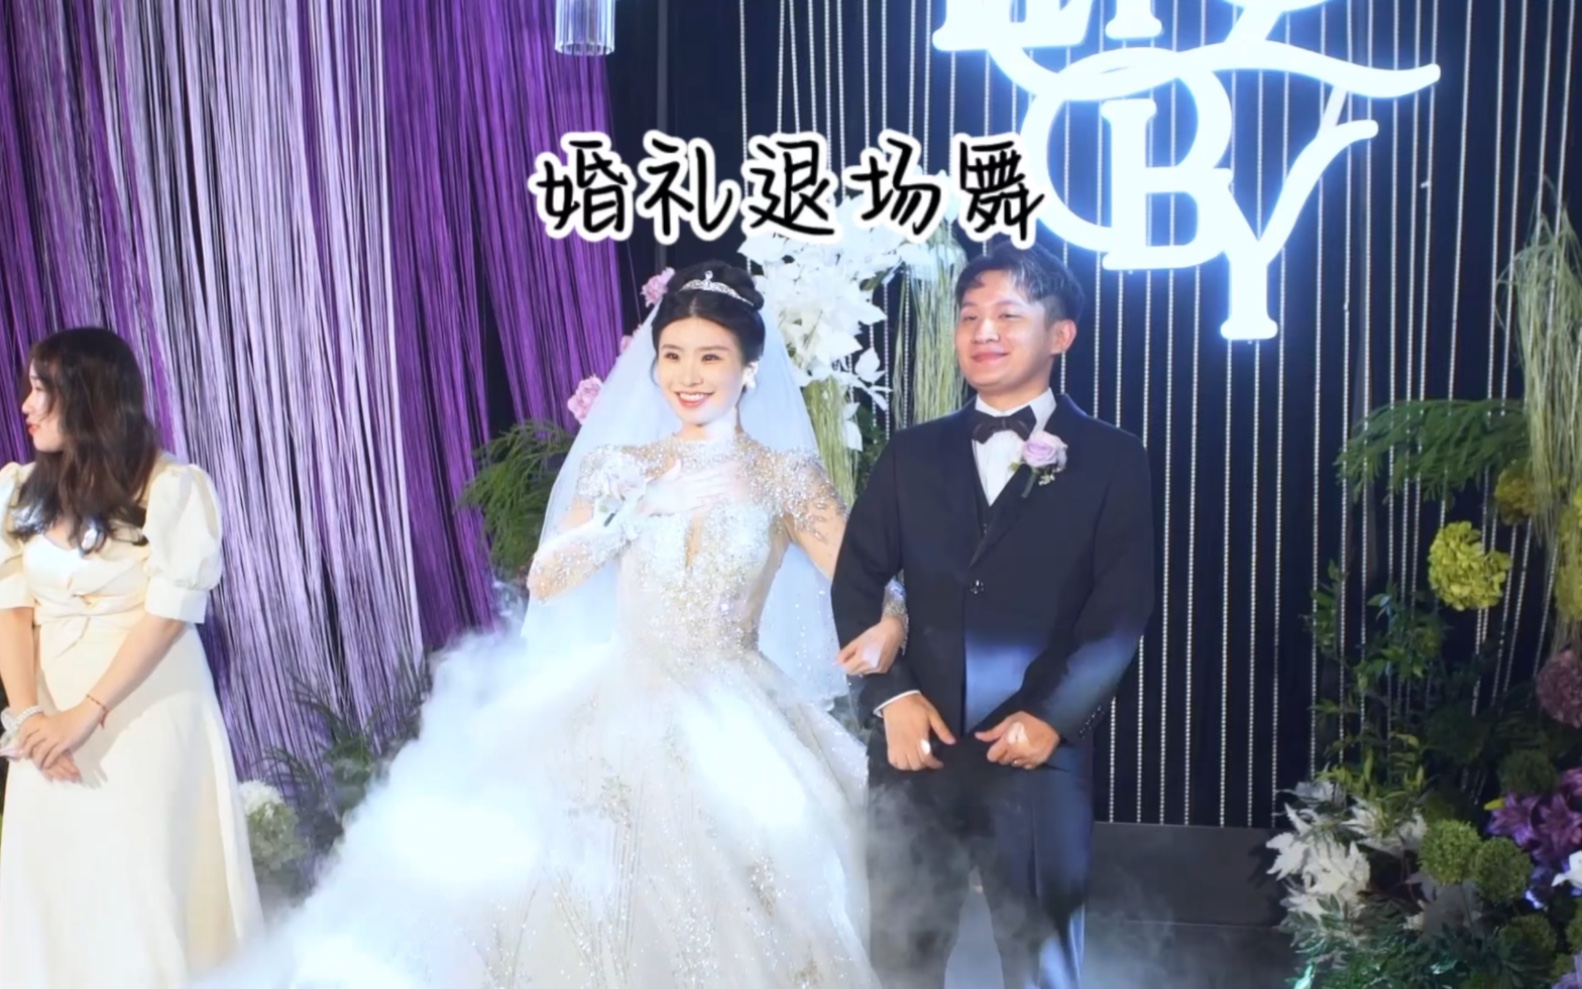 婚礼的退场舞很有气氛呀，希望婚姻的日子，我们一直都欢乐已对。#汕头婚礼主持人 #深圳婚礼主持人 #香港婚礼主持人